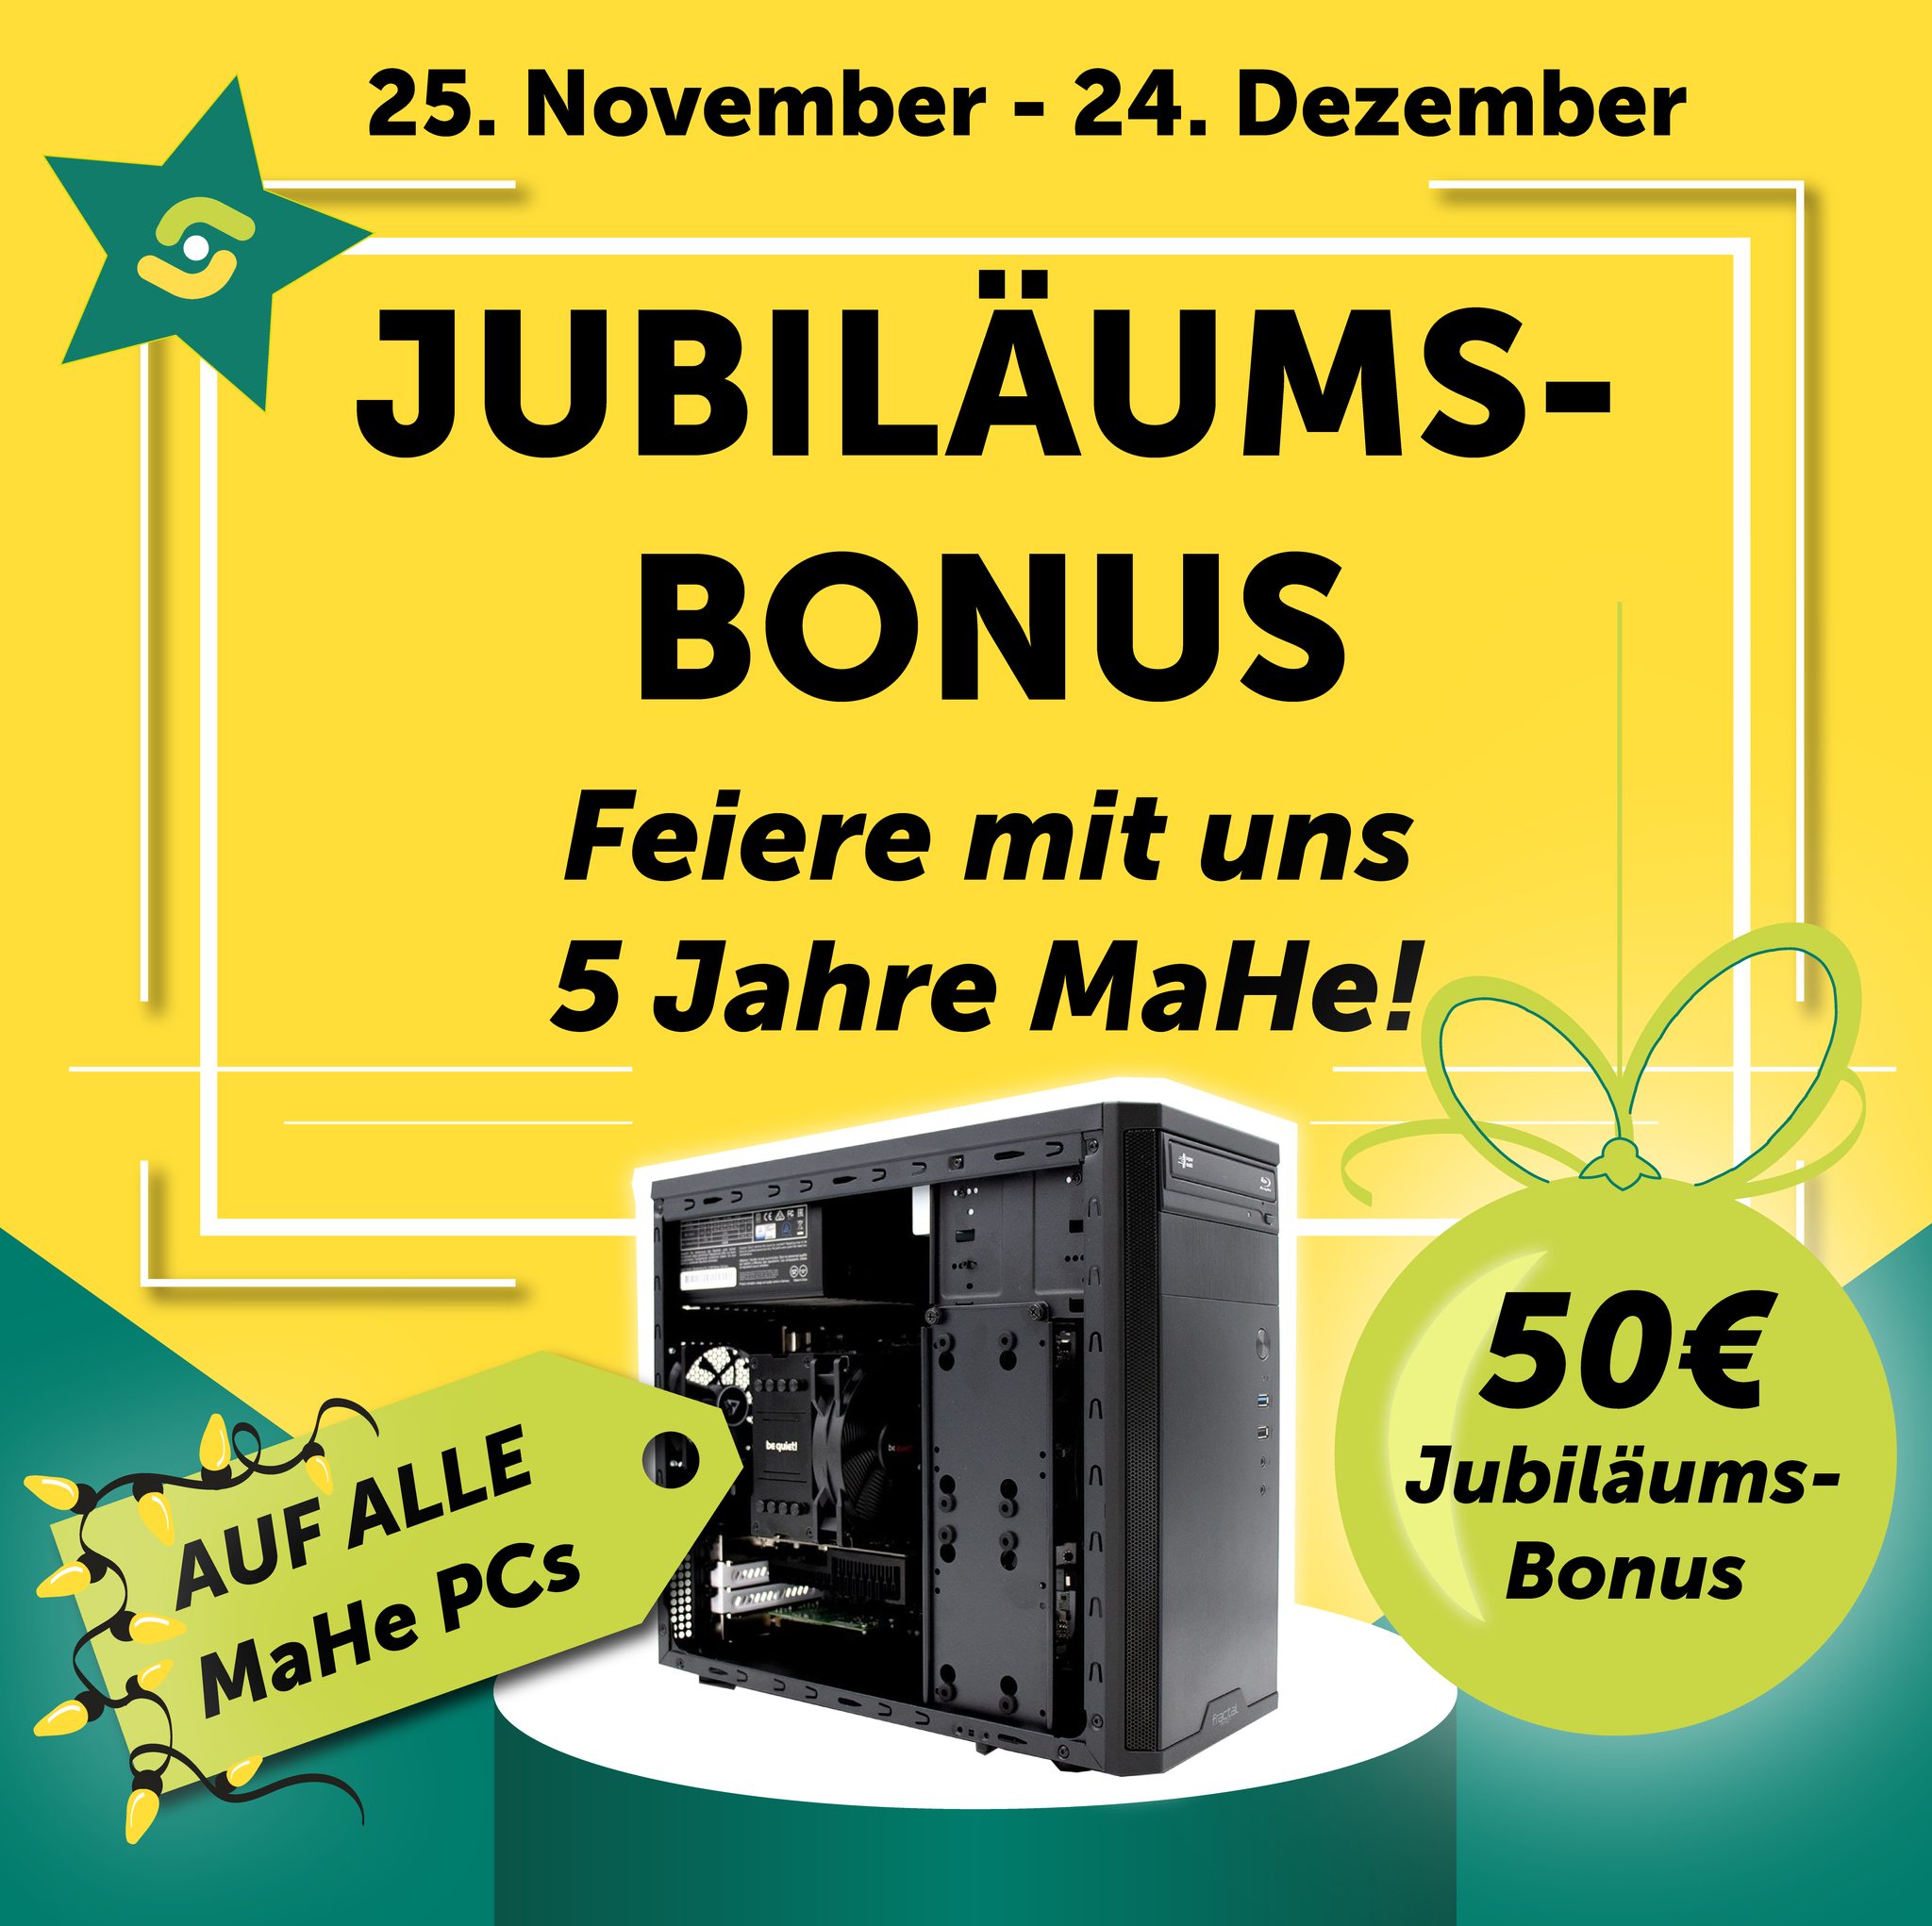 MaHe PCs mit EUR 50,- Jubiläums-Bonus